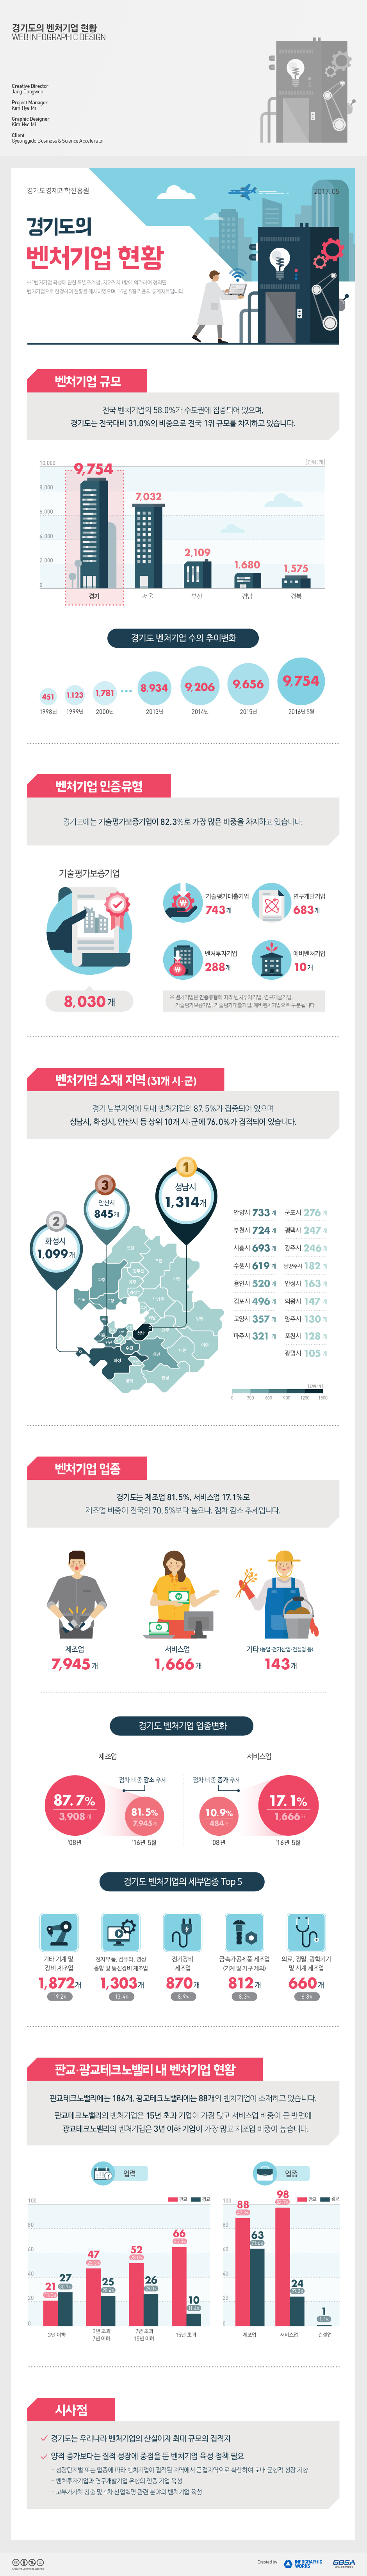 경기도의-벤처기업현황-홈페이지-업로드용